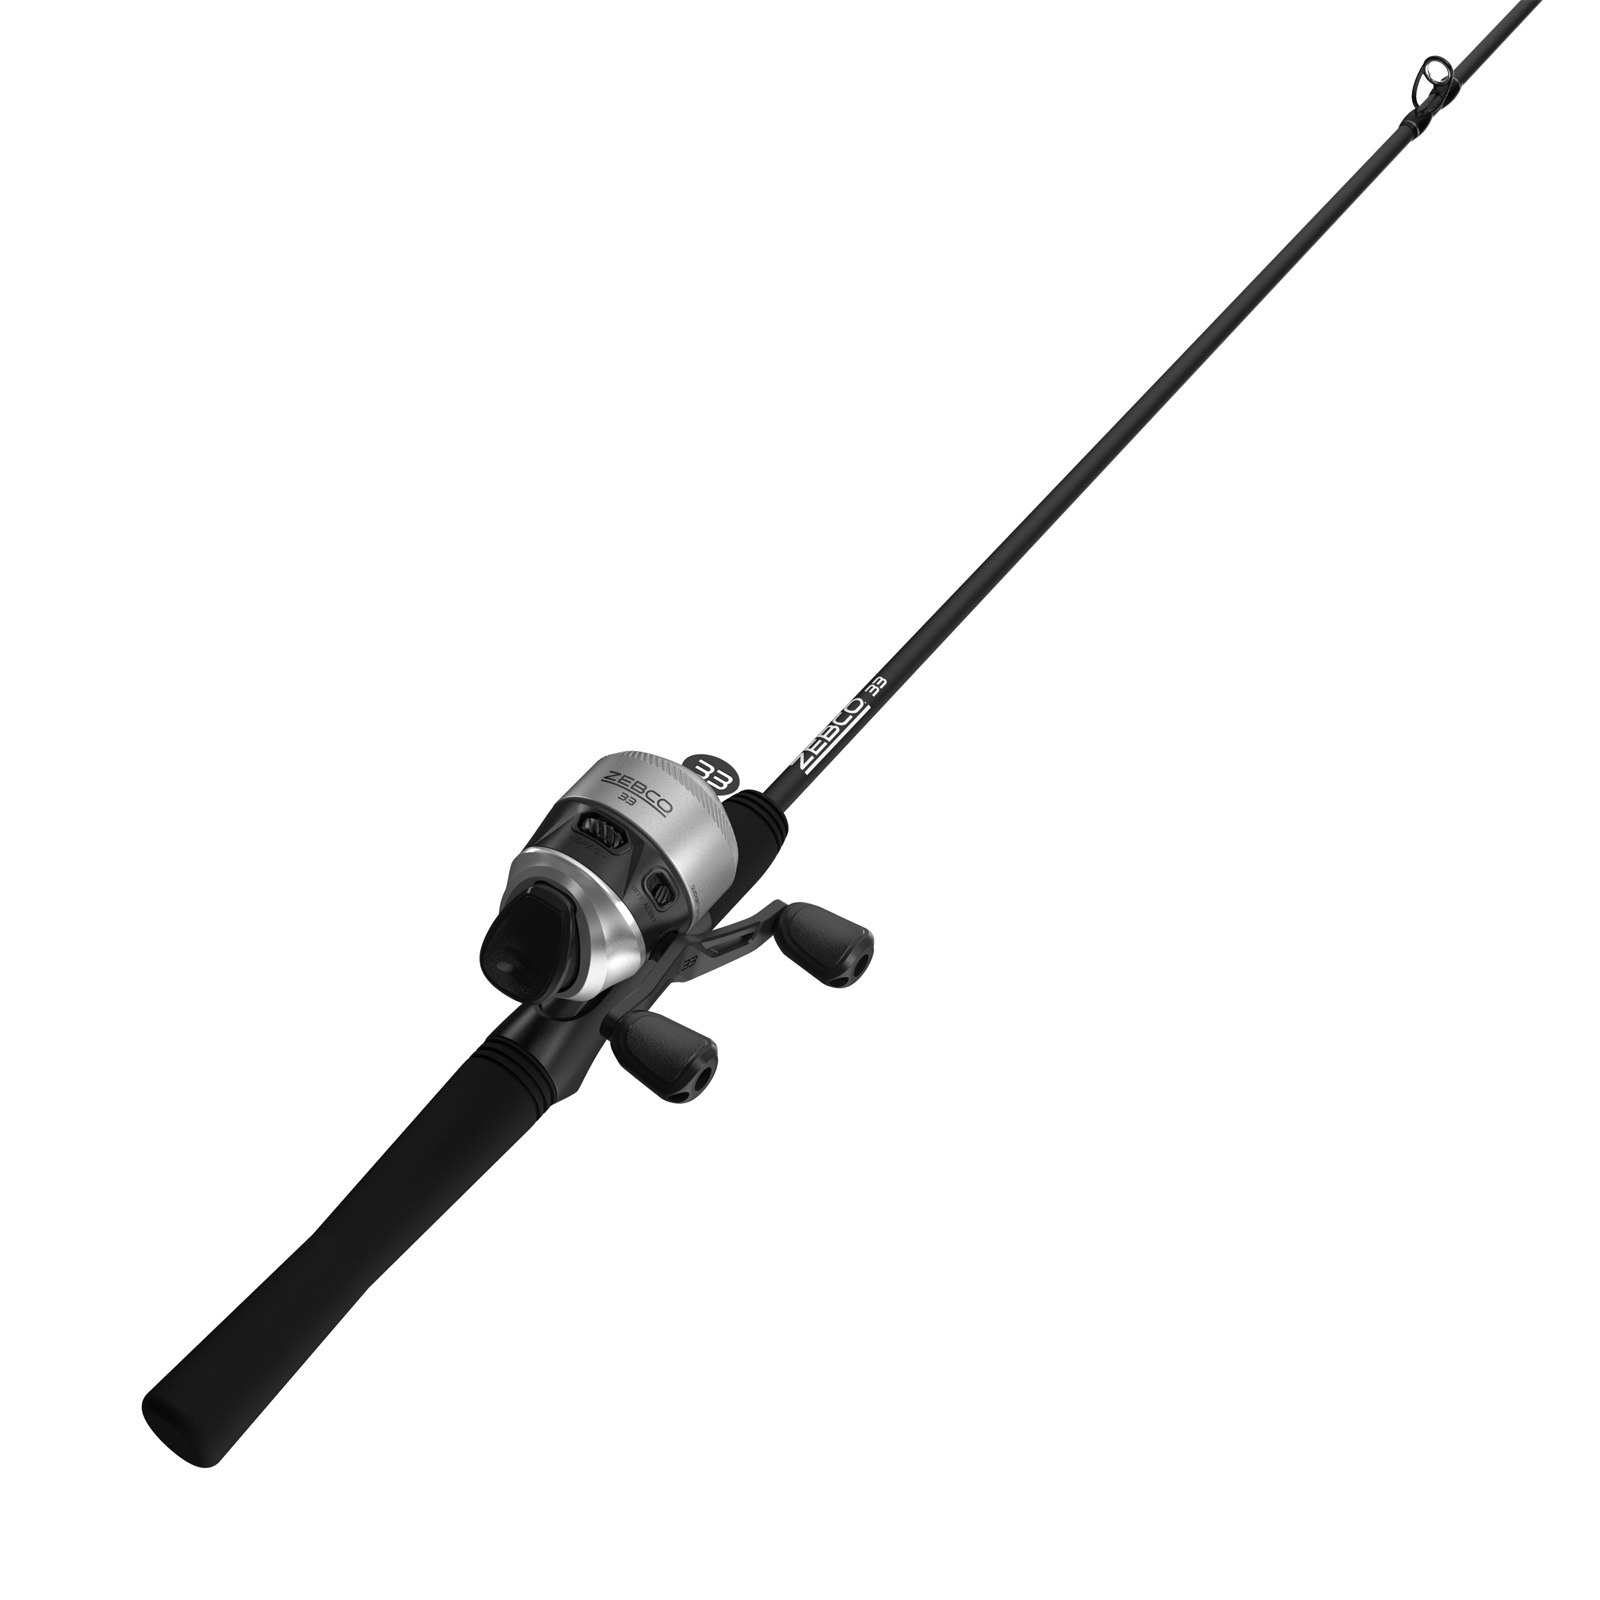 Spincast Fishing Reel, Zebco 33